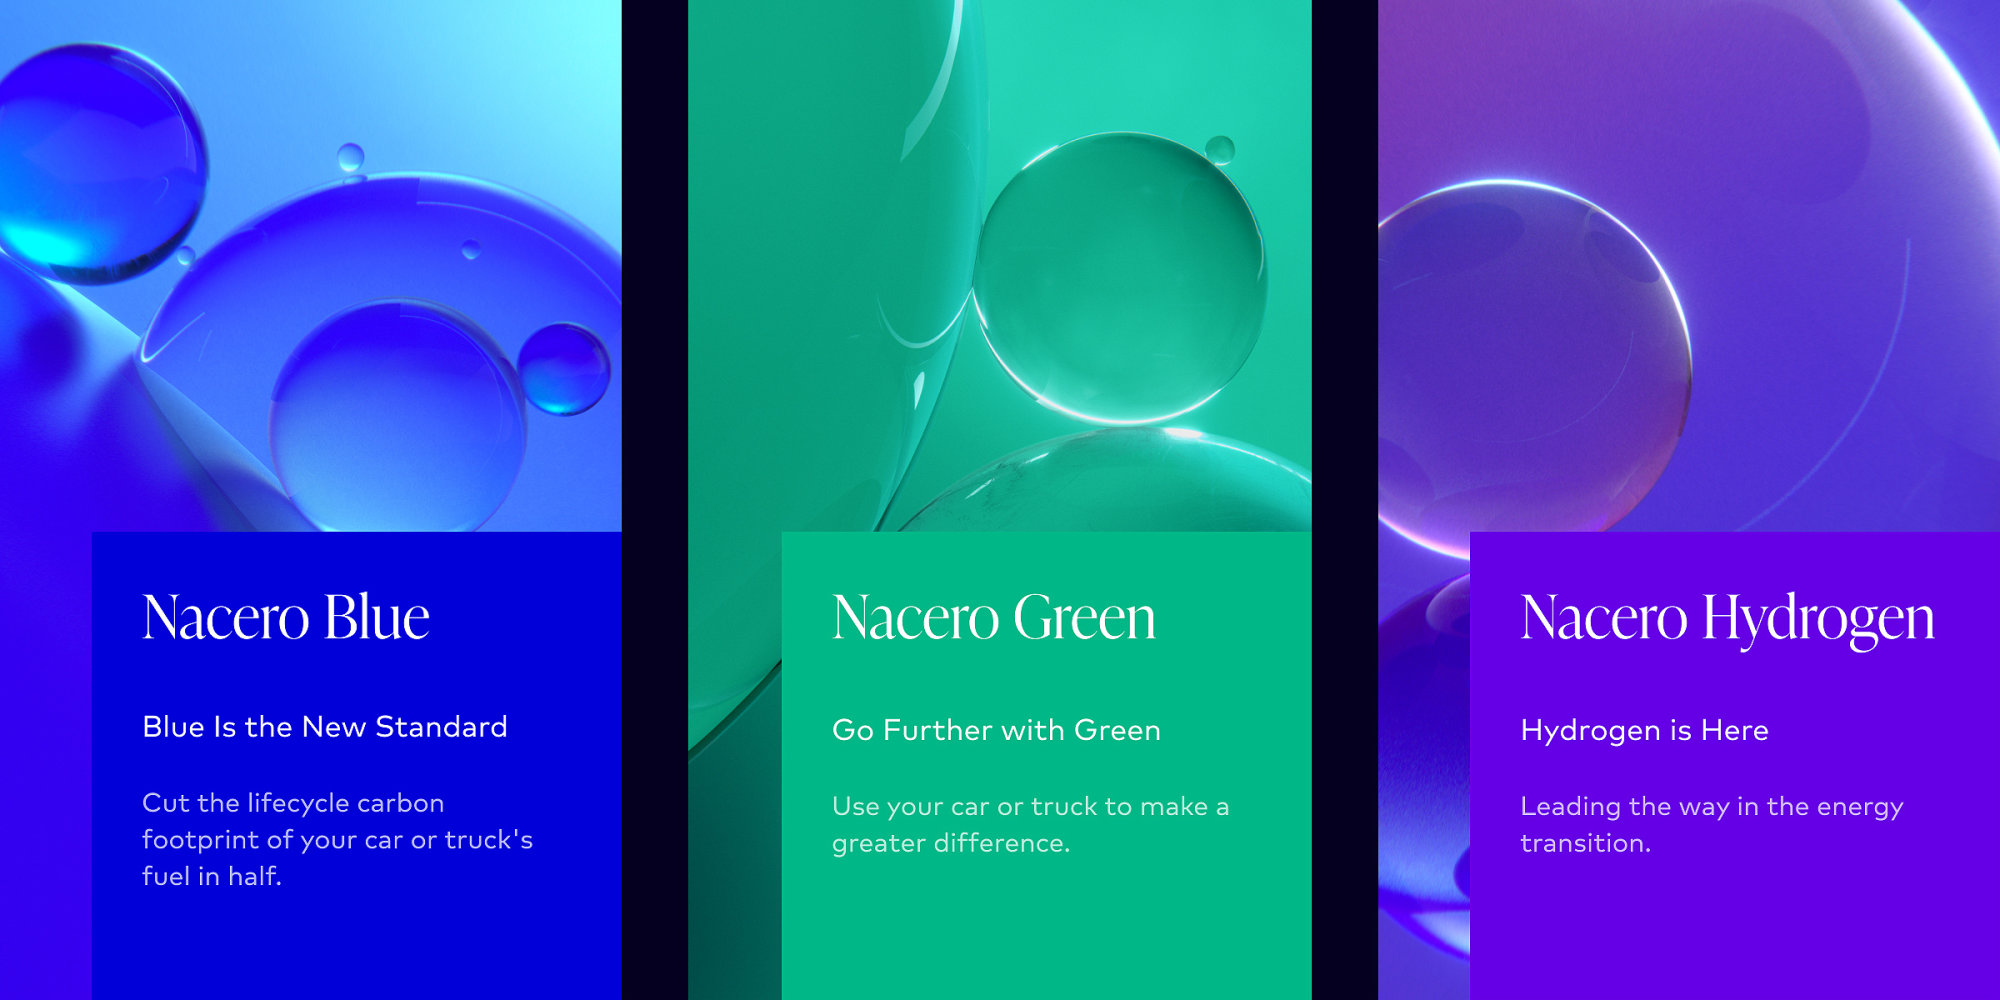 Nacero Product Key Visuals